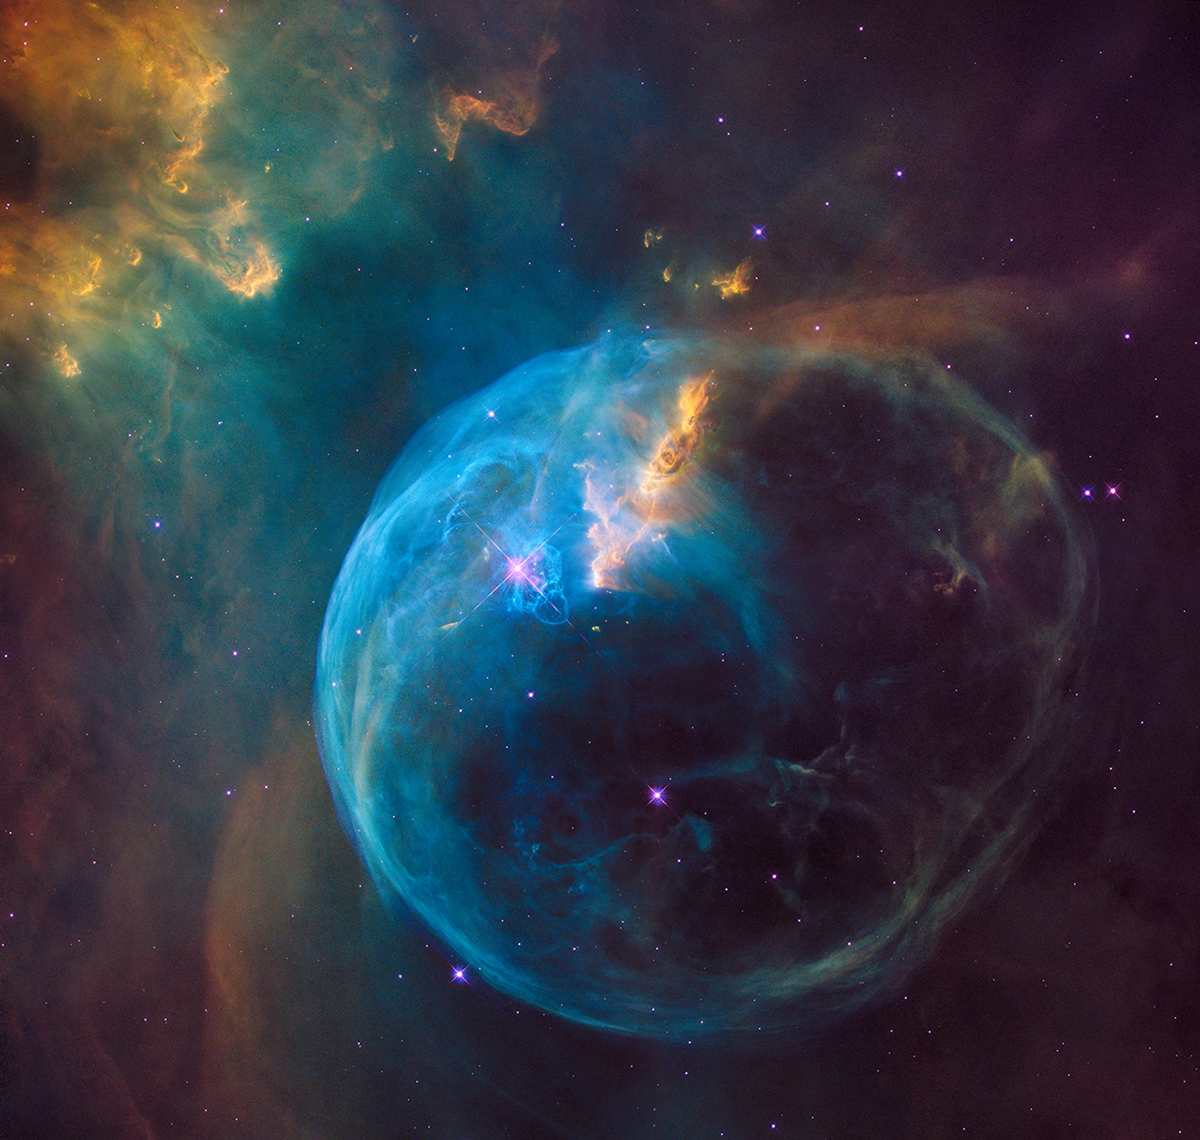 Nebula Gelembung yang indah dan lebih luas daripada Tata Surya kita dipotret oleh teleskop antariksa Hubble pada ulang tahun yang ke-26-nya.